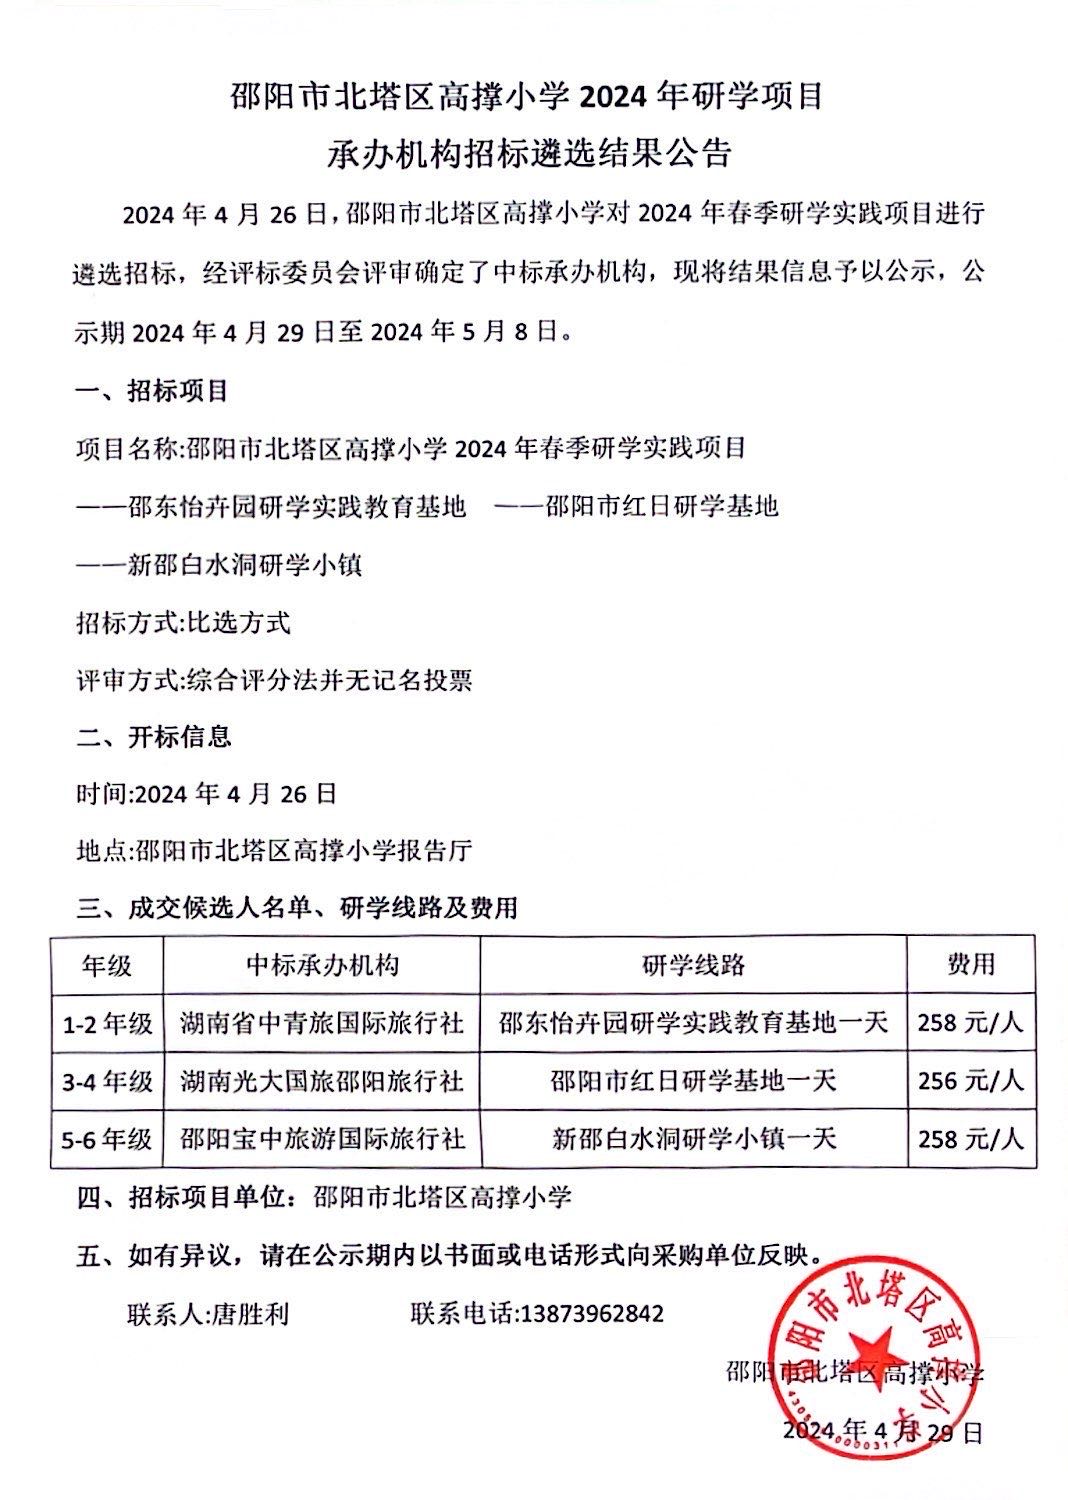 邵阳市北塔区高撑小学2024年研学项目承办机构招标遴选结果公示